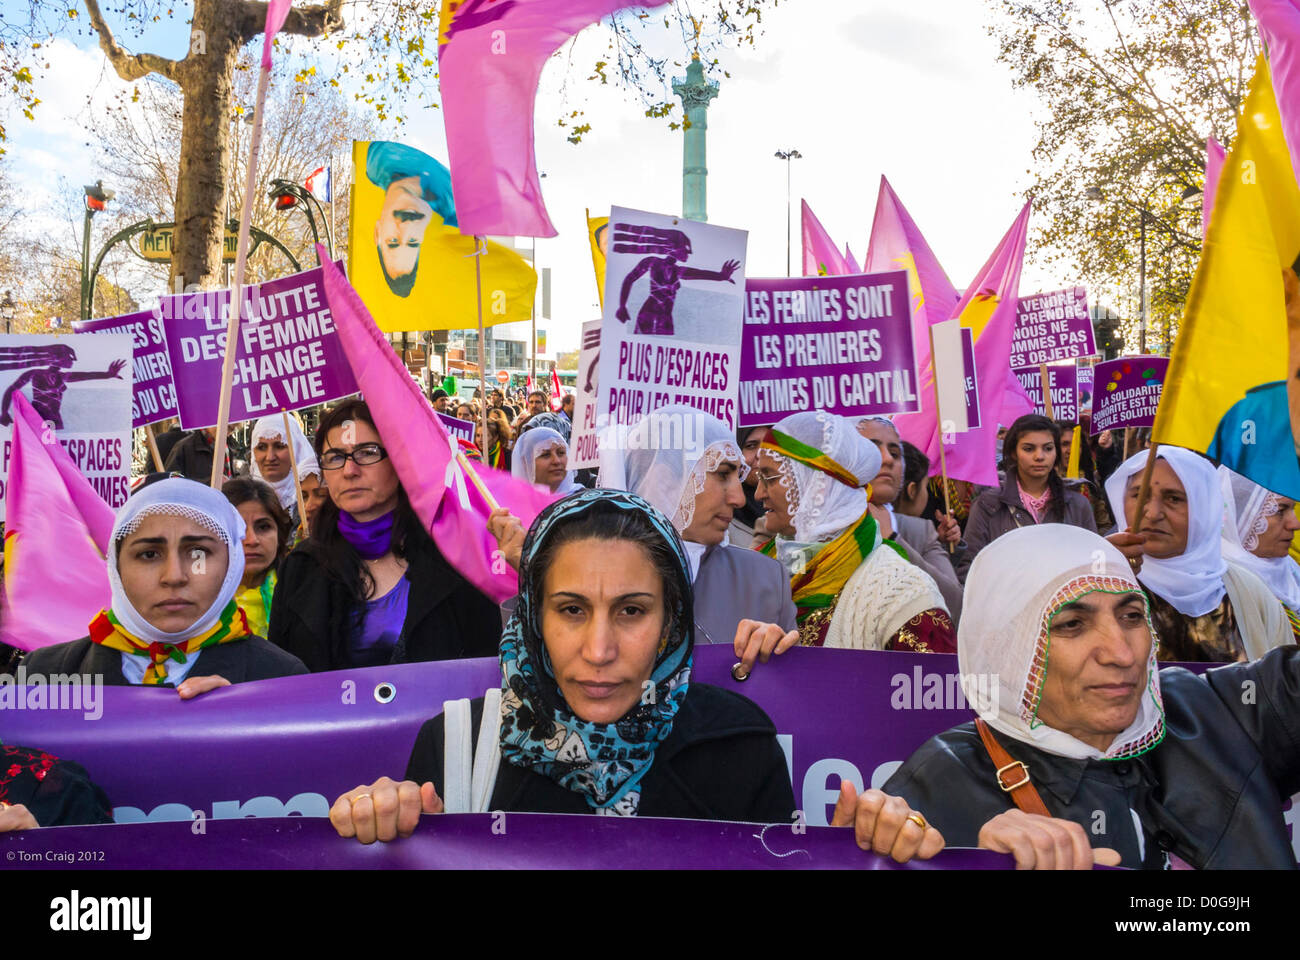 Paris, France, manifestation différents groupes féministes ont organisé une marche contre la violence envers les femmes, Journée internationale des droits de la femme, Groupe des femmes kurdes, égalité des femmes protestant contre les droits des femmes, femmes kurdes, france musulmane, femme portant un hijab france, groupe de femmes âgées sérieux, signes d'autonomisation des femmes Banque D'Images